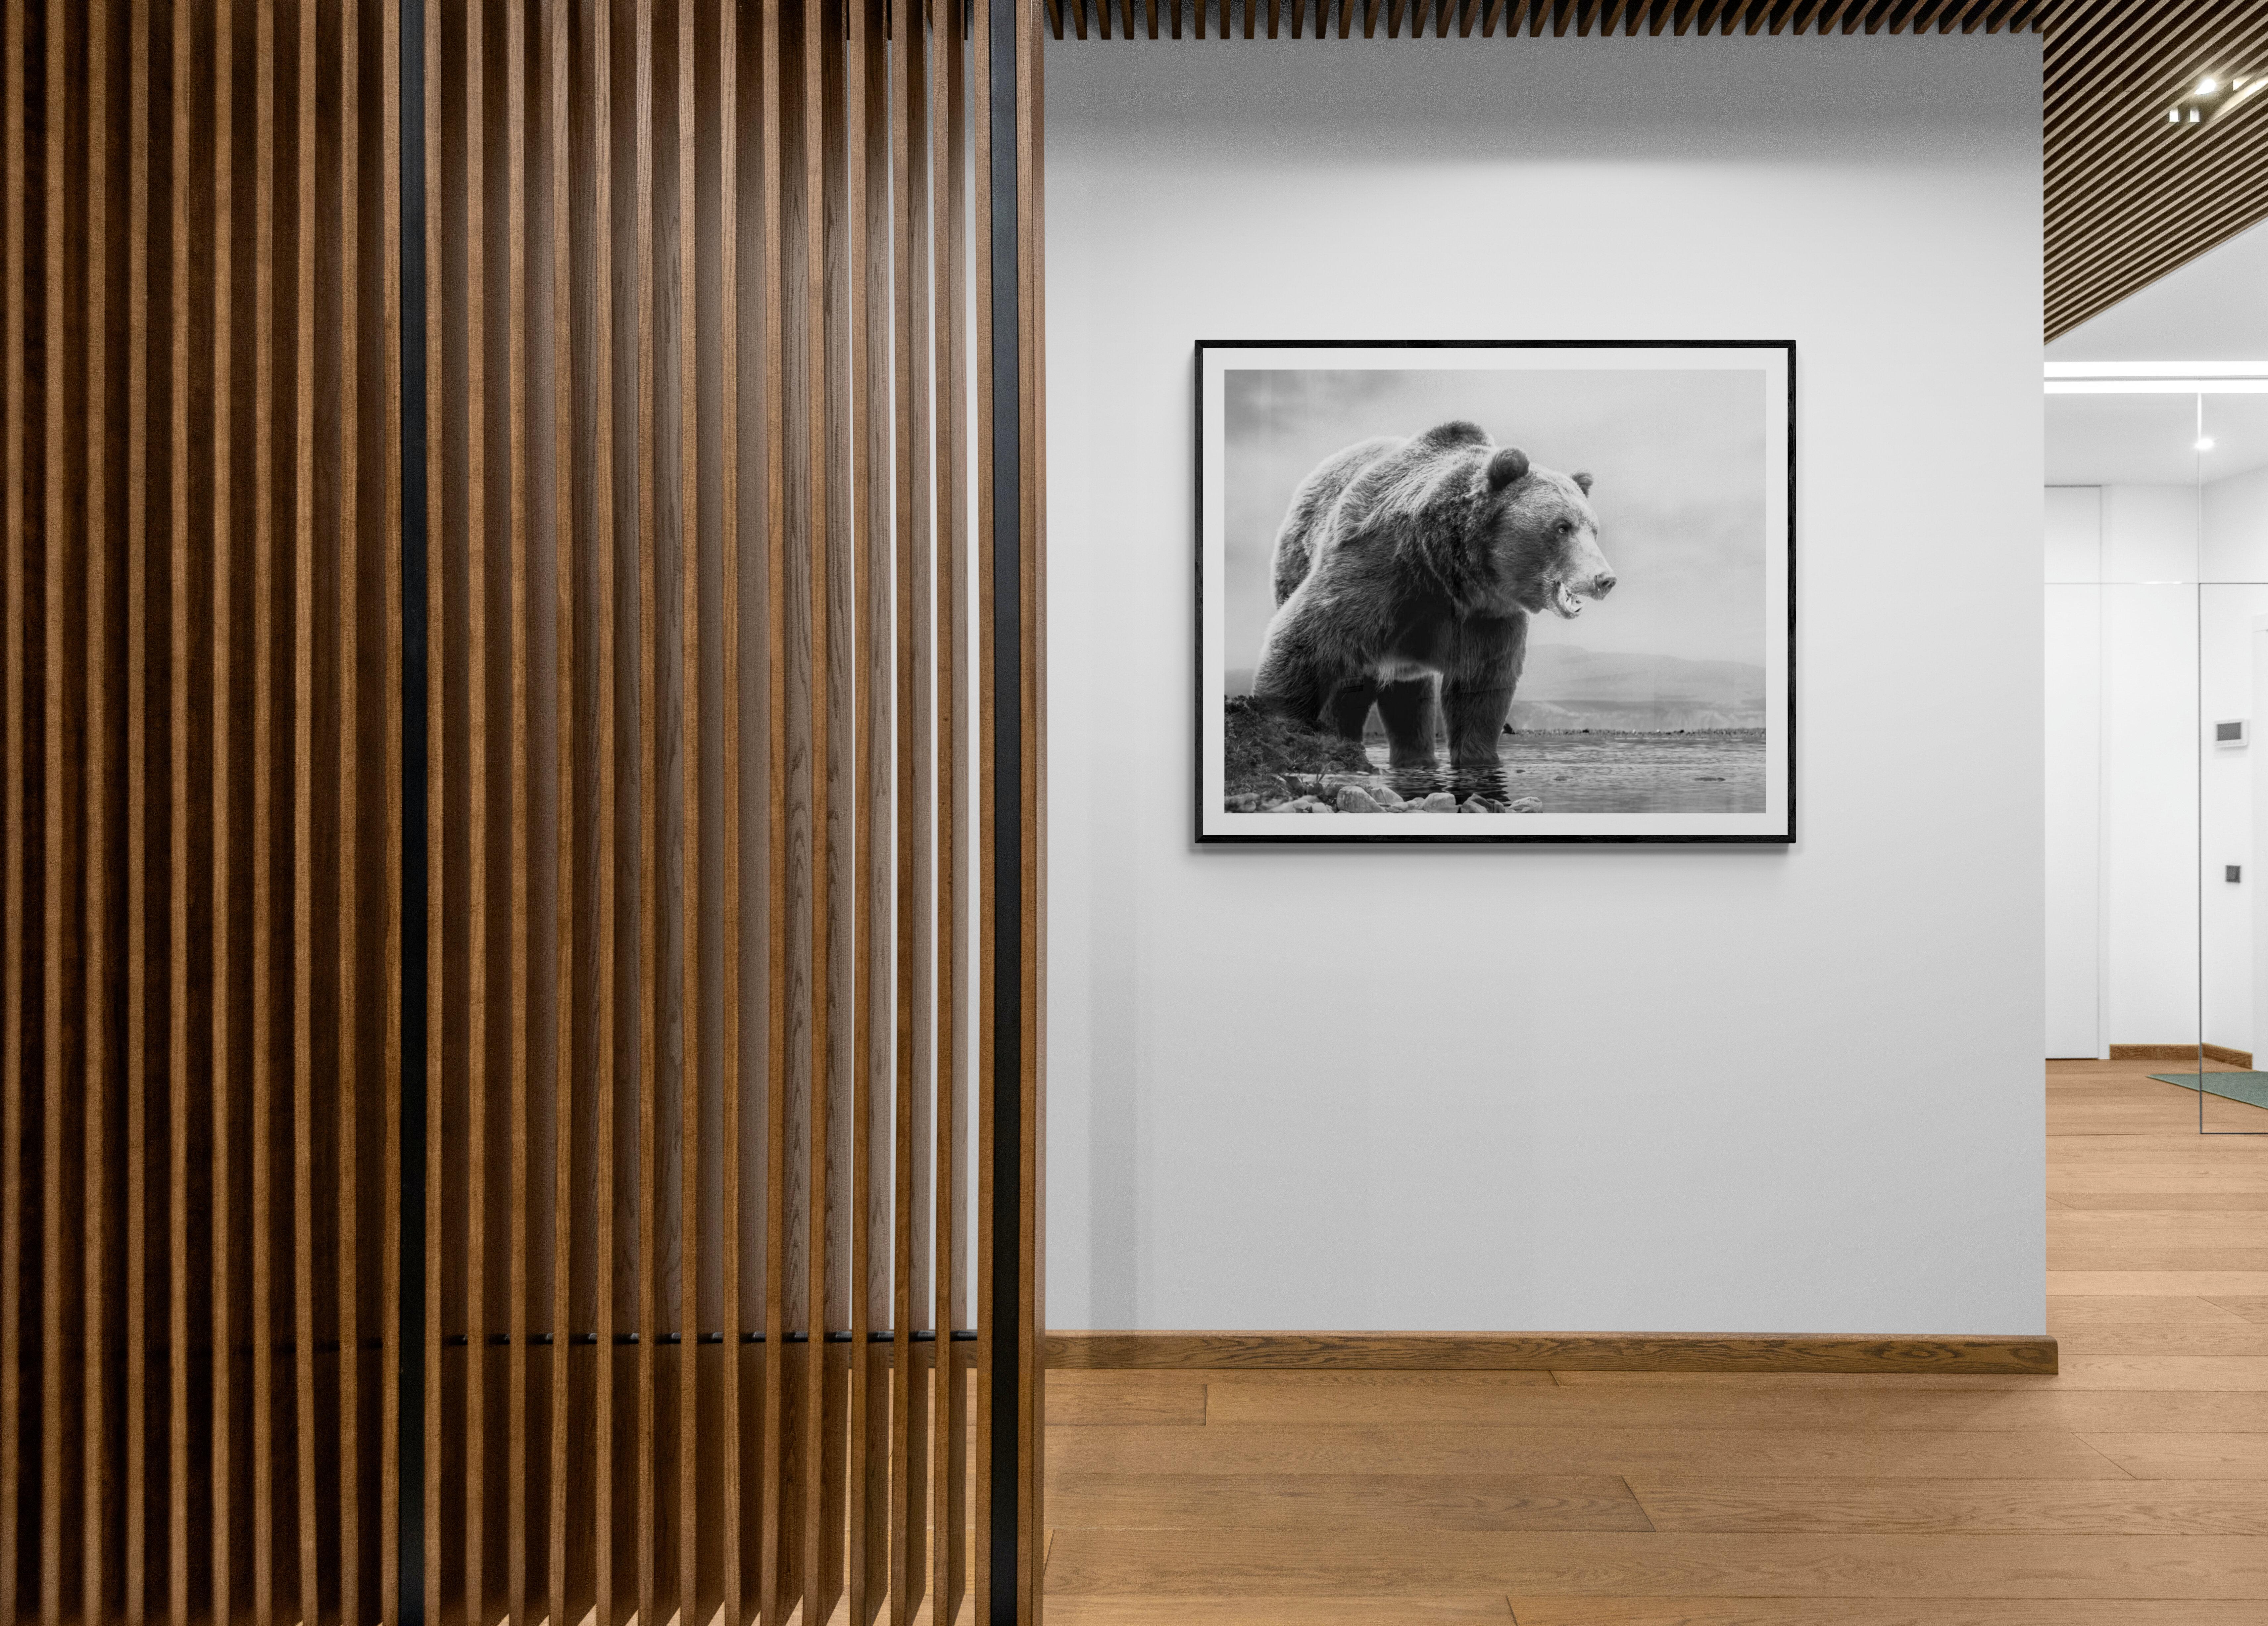 Il s'agit d'une photographie contemporaine d'un ours Kodiak.  
Cette photo a été prise sur l'île de Kodiak en 2019.
Edition de 50
Signé et numéroté par Shane Russeck 
Papier pigmentaire d'archivage
Encadrement disponible. Renseignez-vous sur les